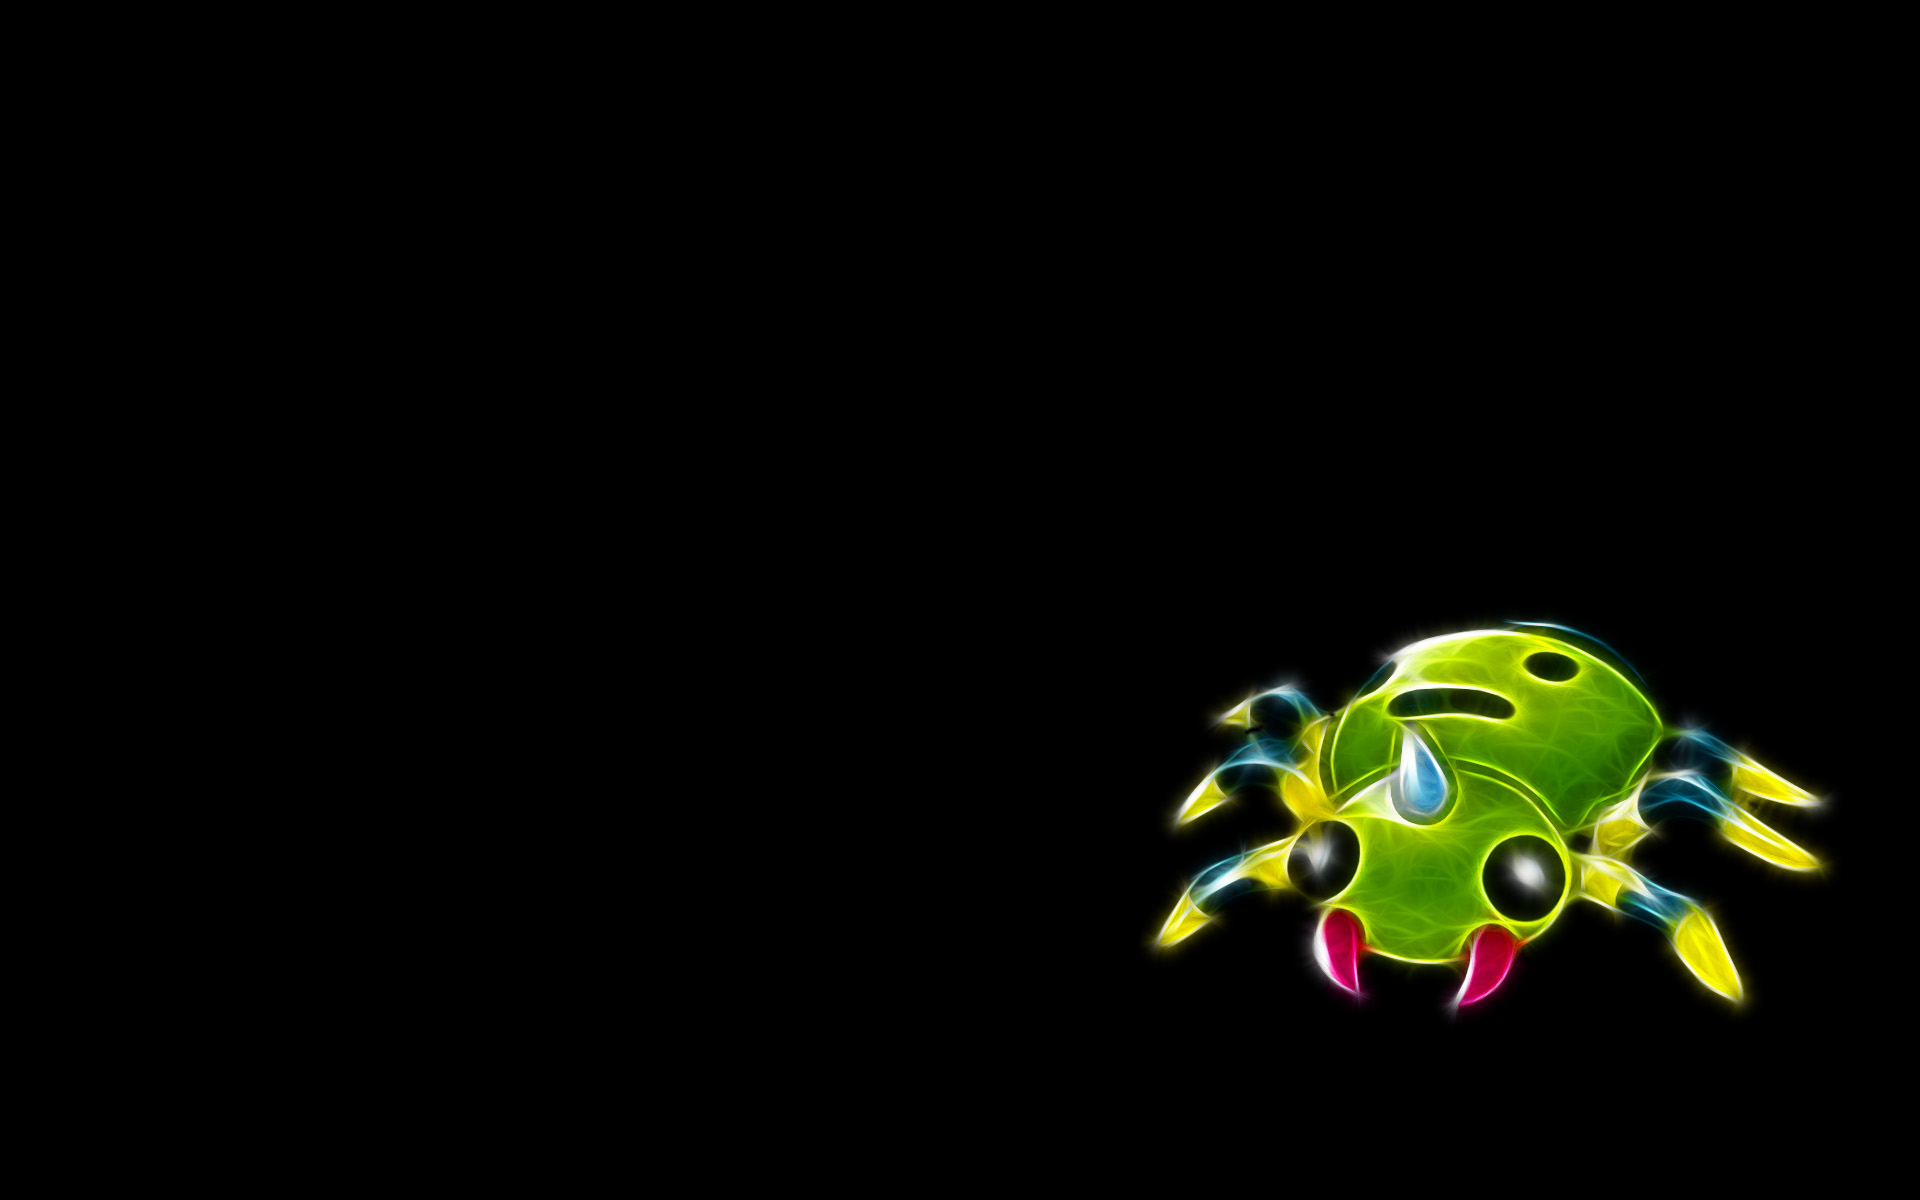 Spinarak, a bug-type Pokémon, in an animated scene.